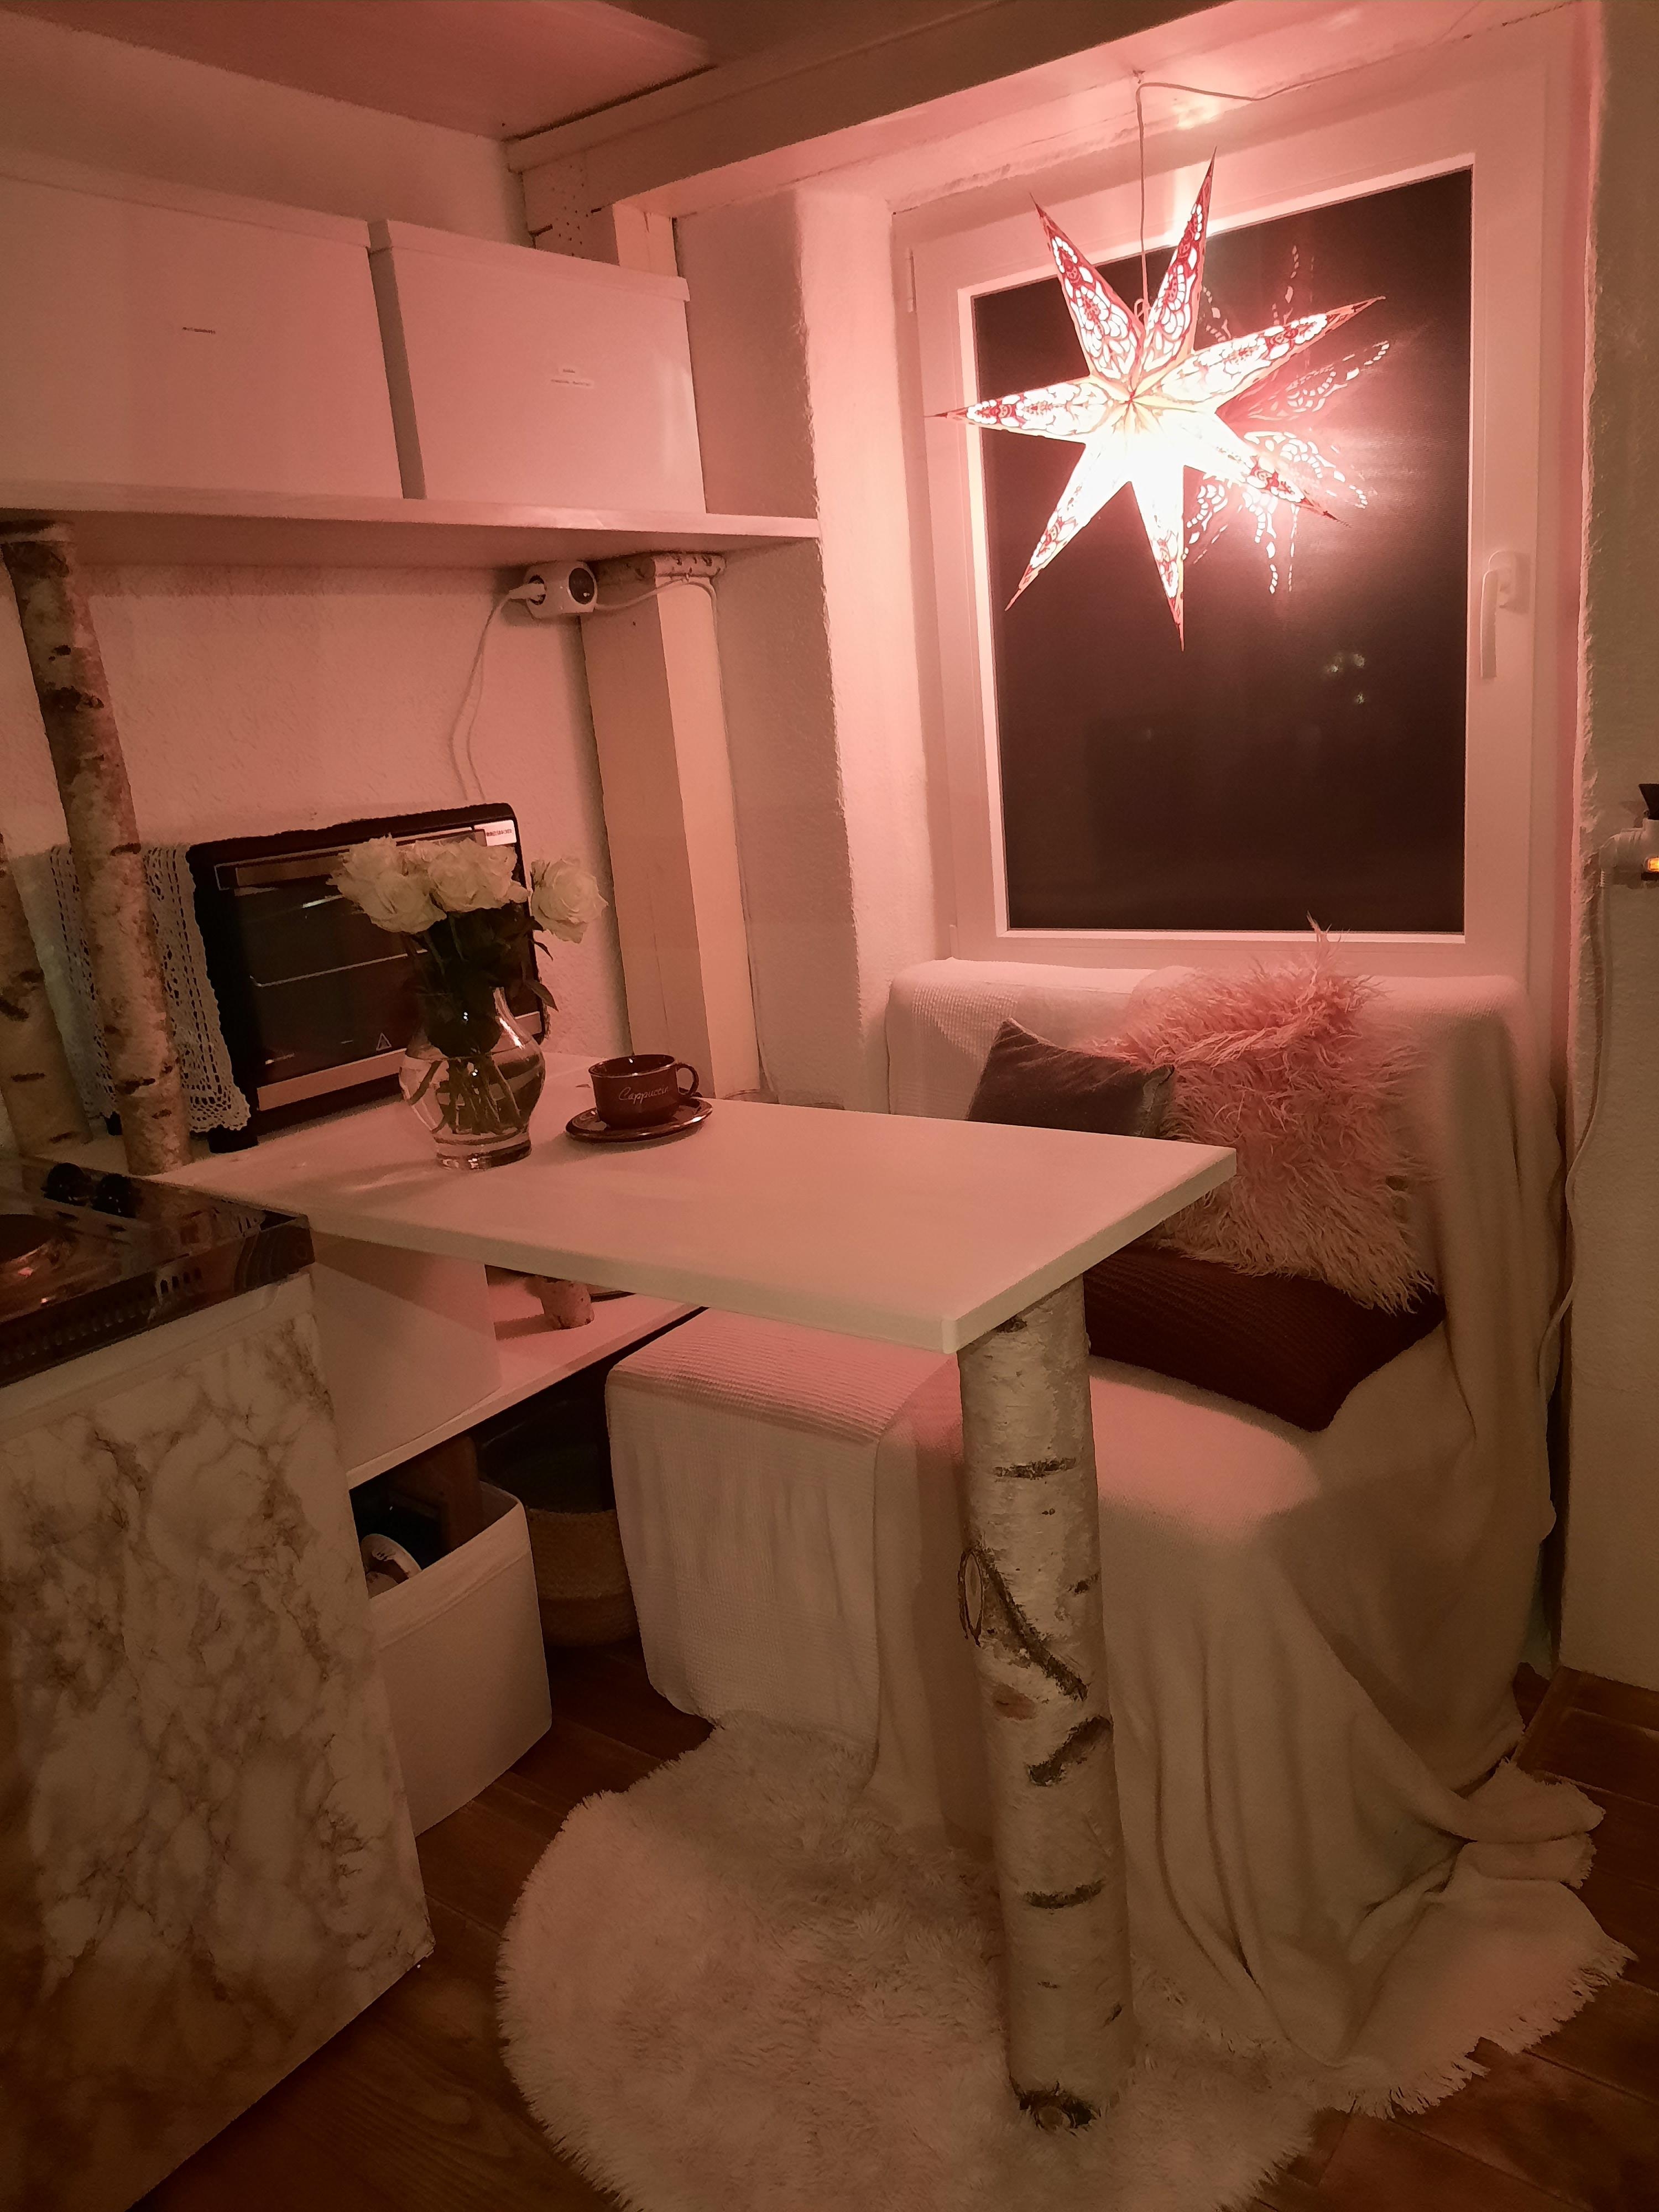 Meine kleine Werkstattwohnung...
#wohnung #werkstatt #weihnachten #klapptisch #diy #selbstgebaut #klapptischdiy #tisch #platzsparend #baumstamm #weiß #couchstyle 